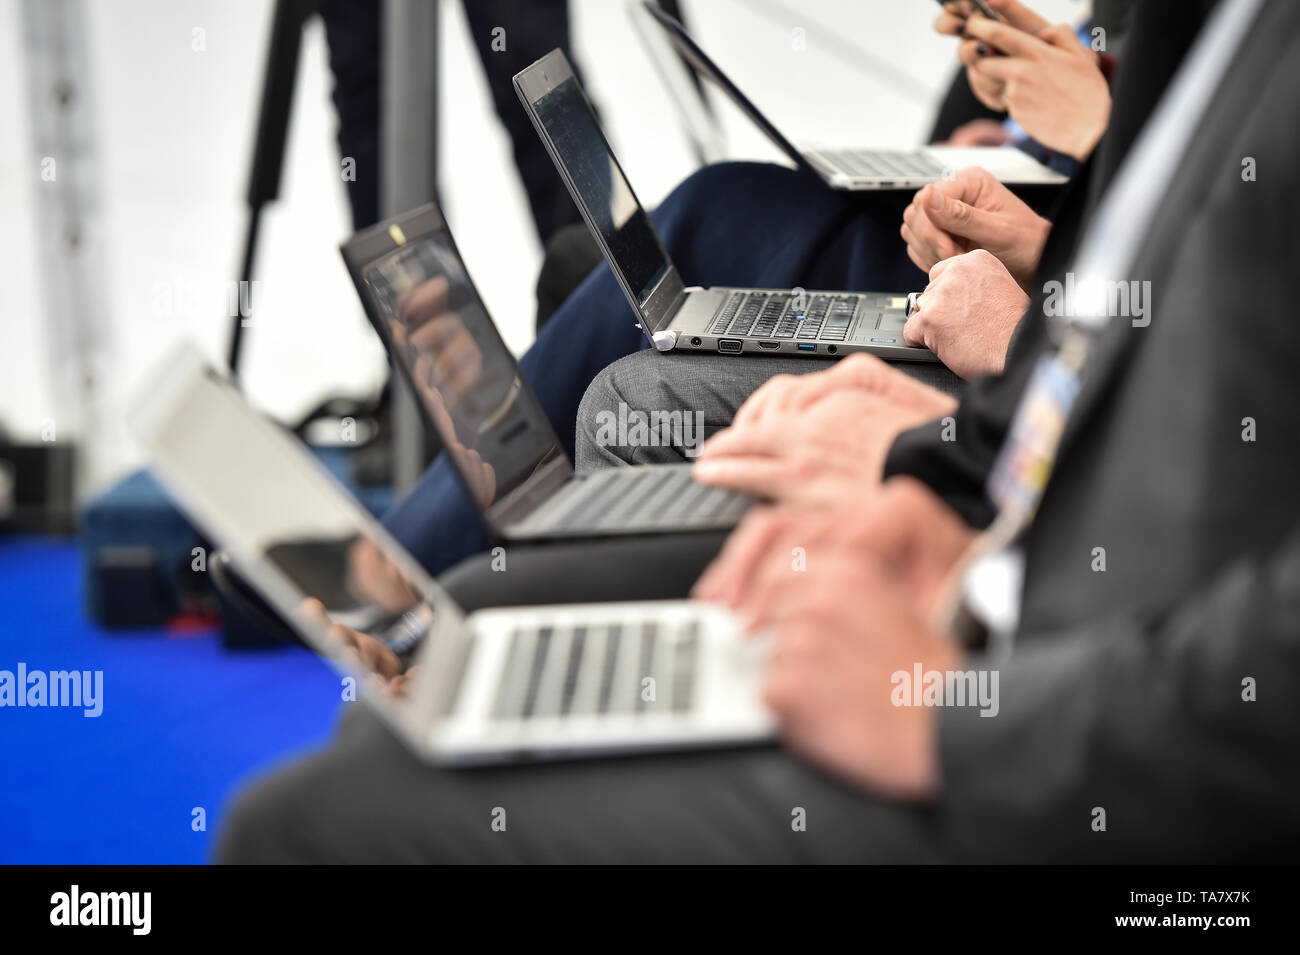 Detalle con periodistas manos escribiendo en portátiles durante una conferencia de prensa Foto de stock